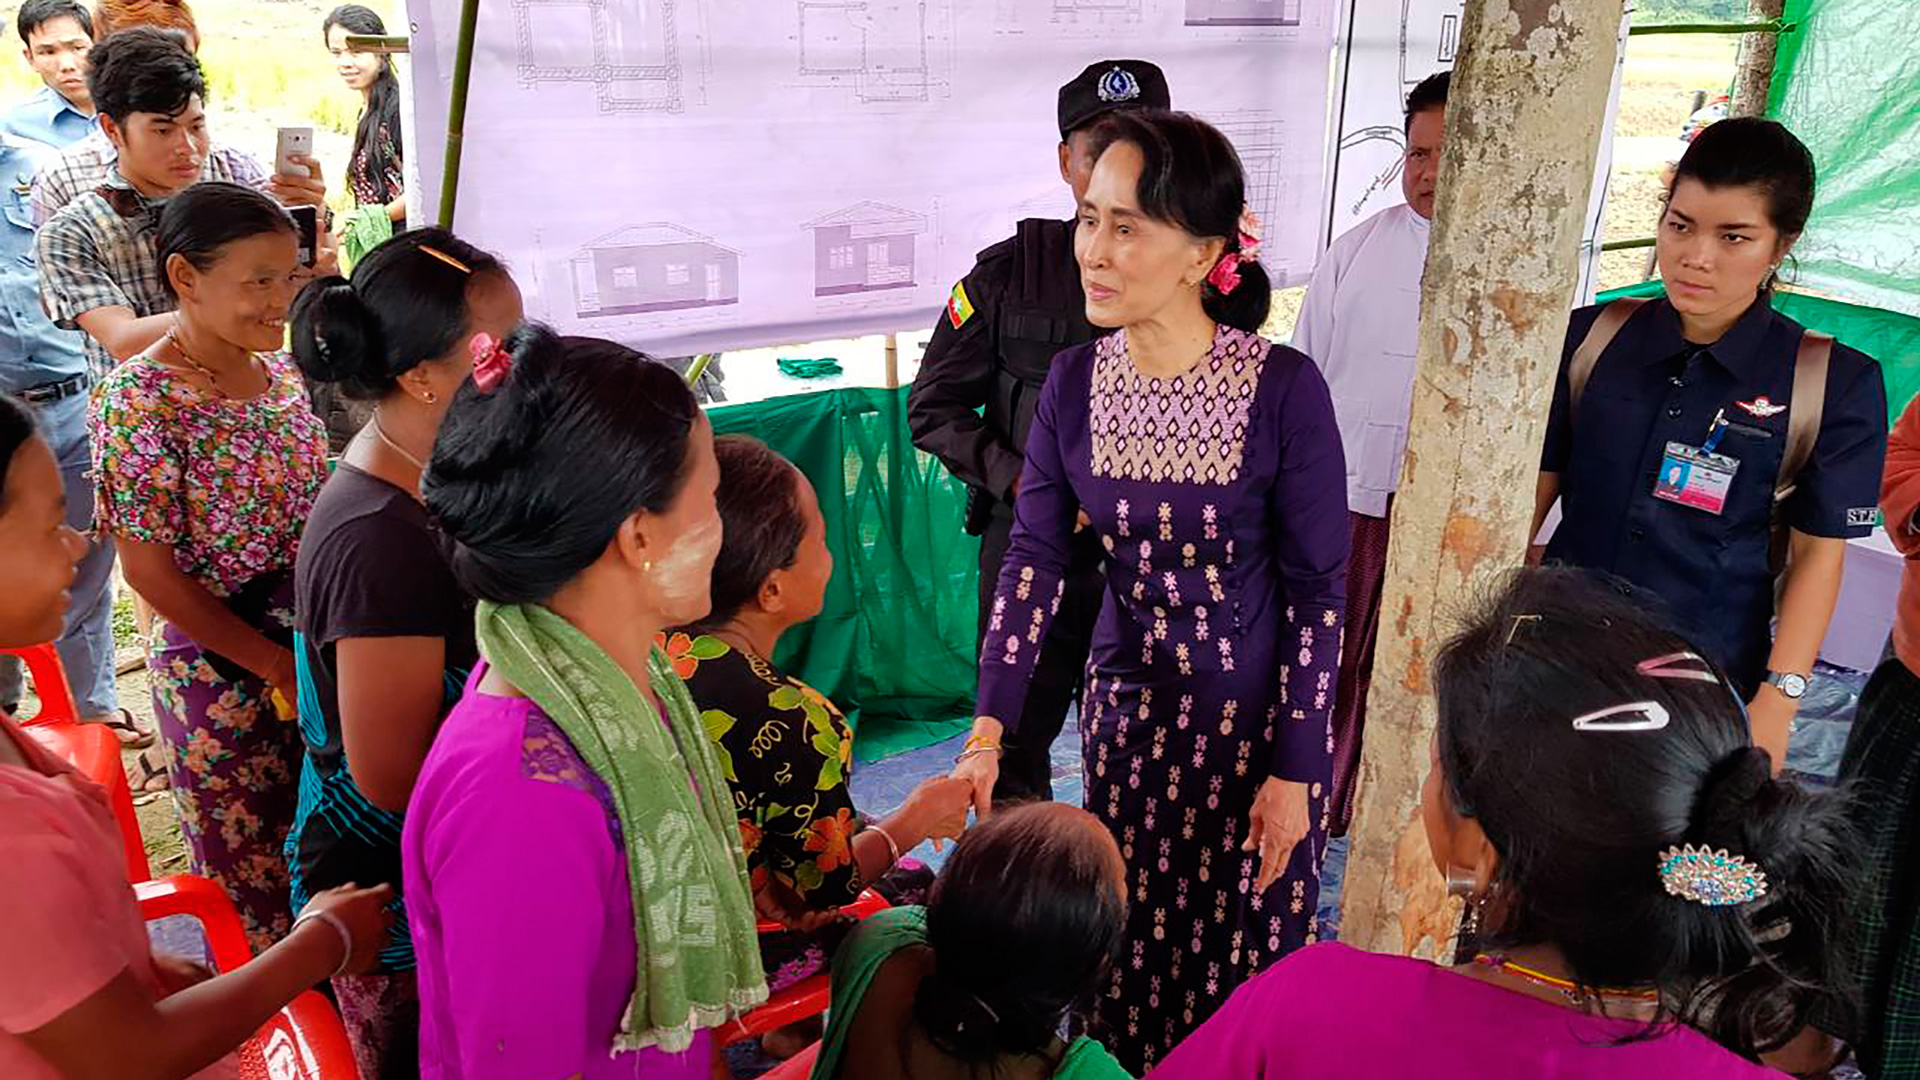 La líder birmana Suu Kyi visita por primera vez a los refugiados rohingya